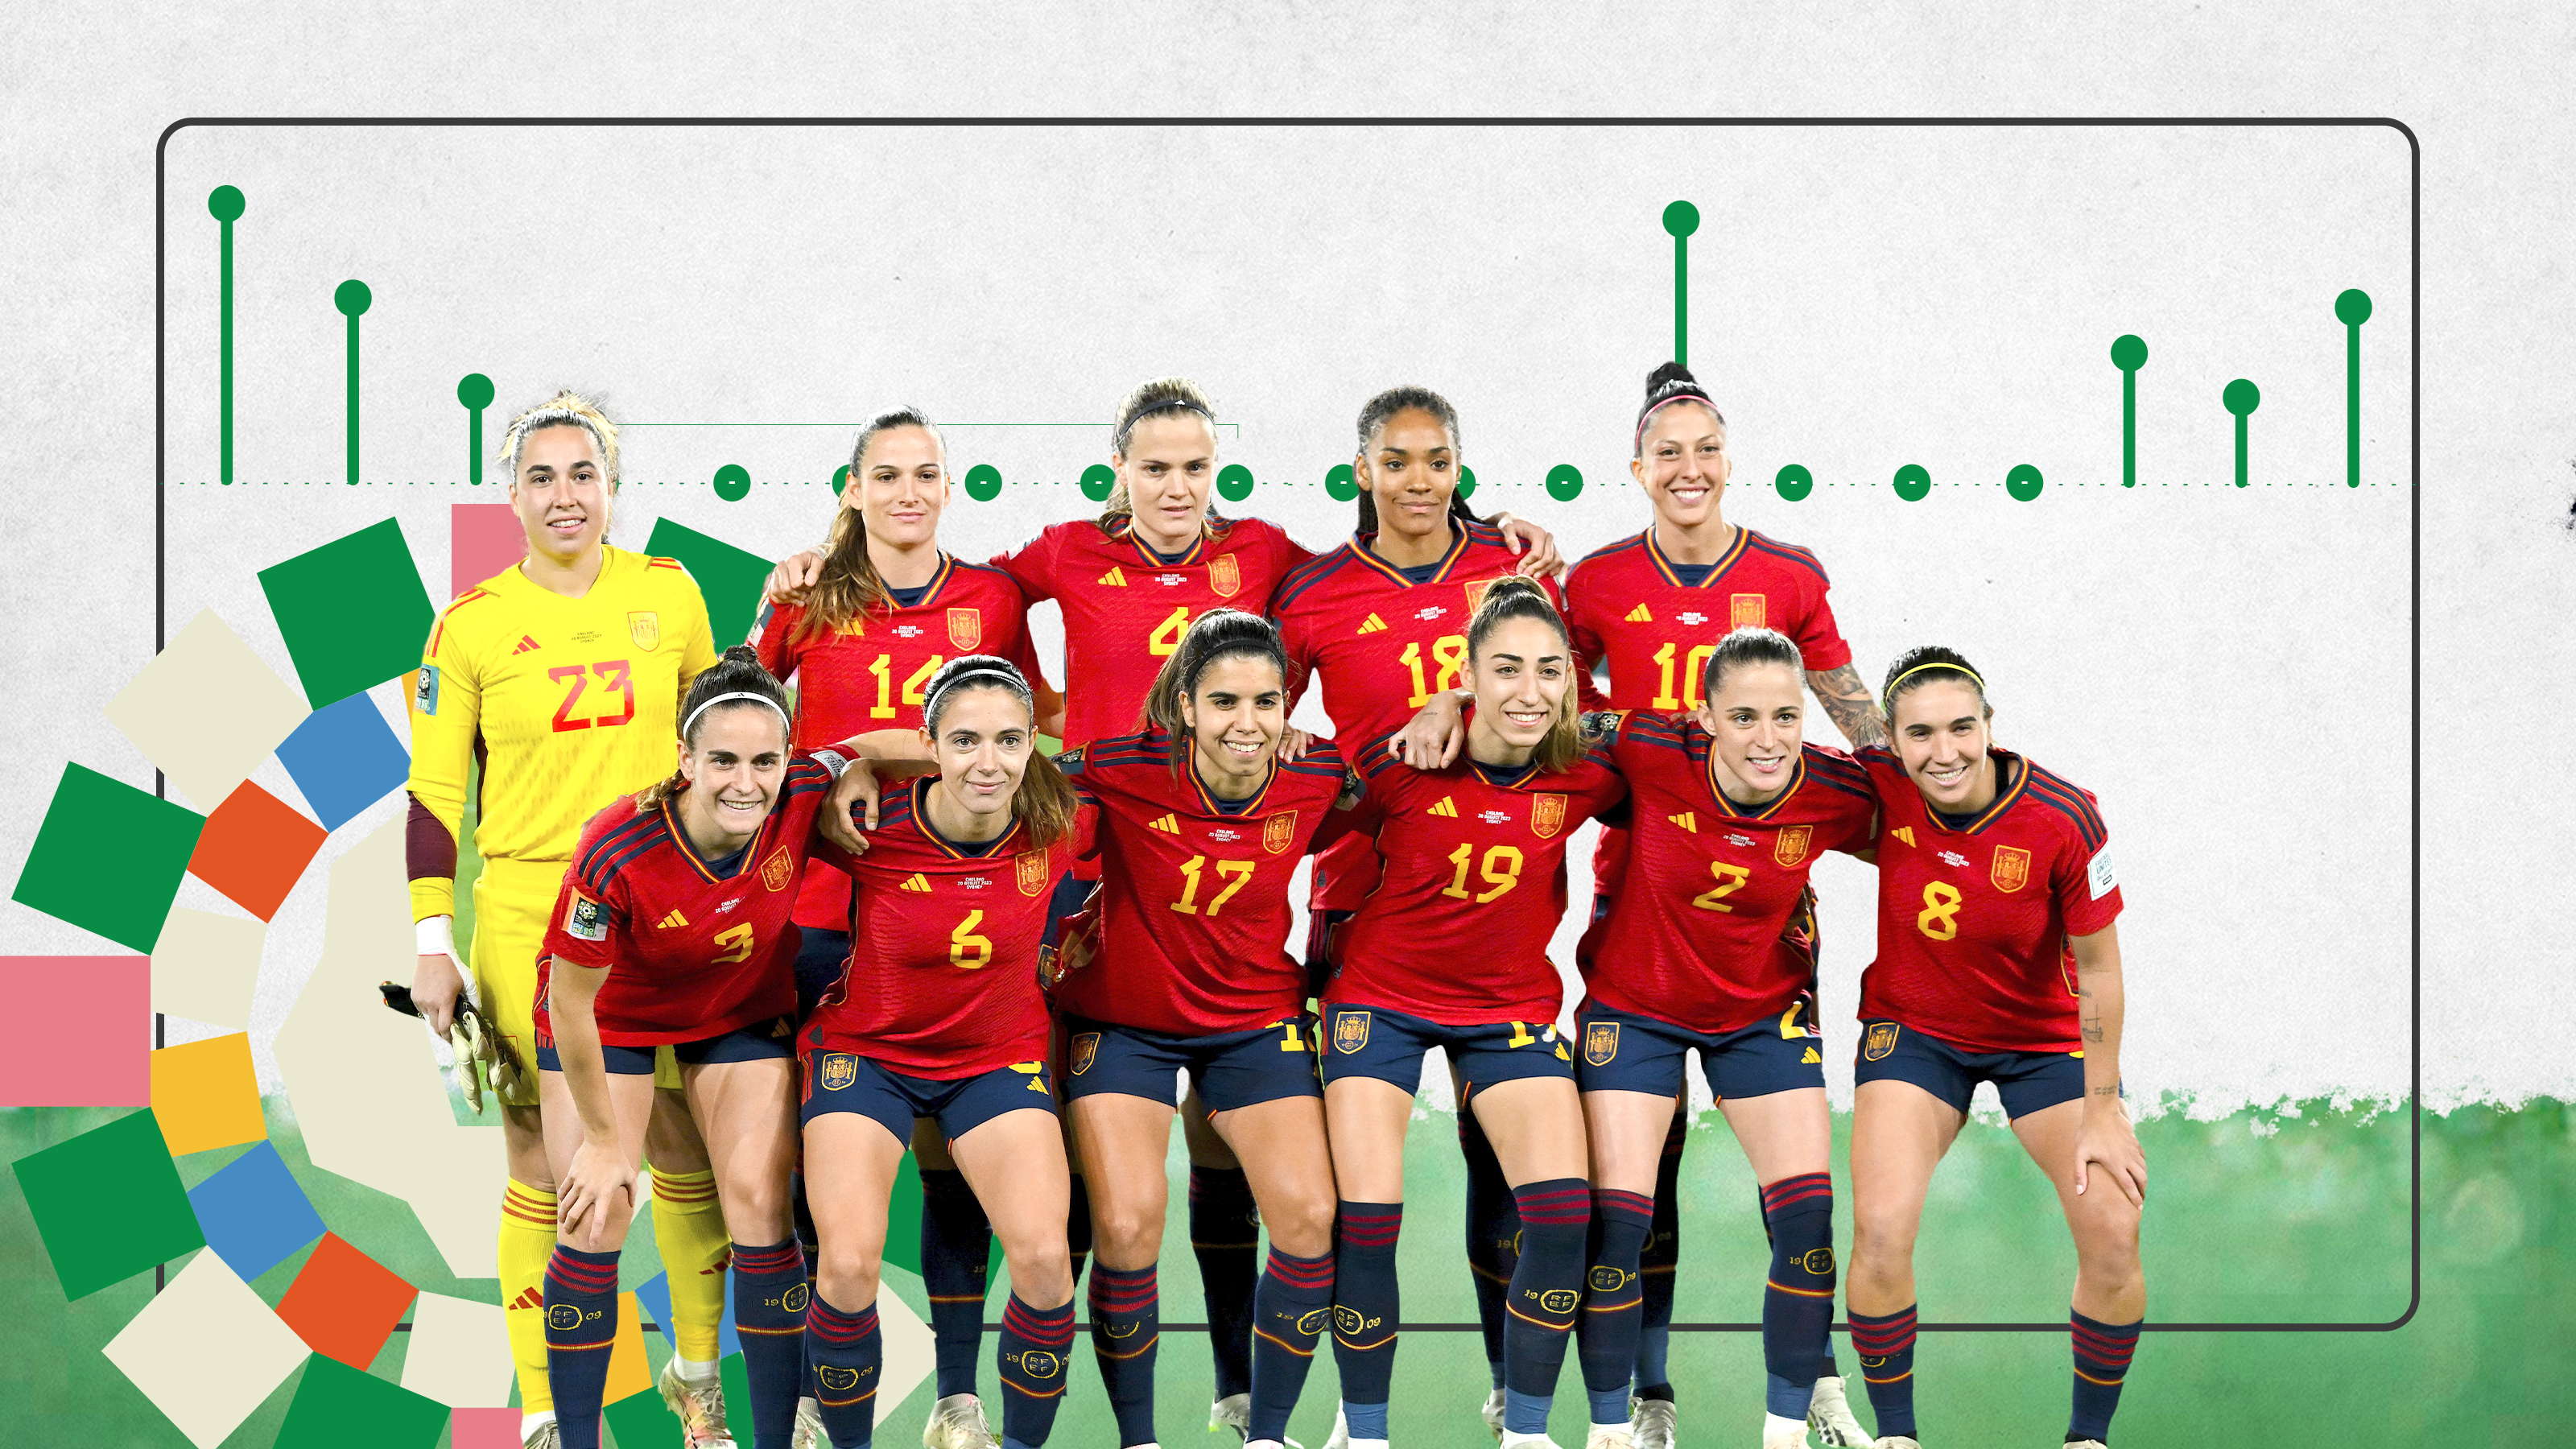 Edades de las jugadoras de la selección española